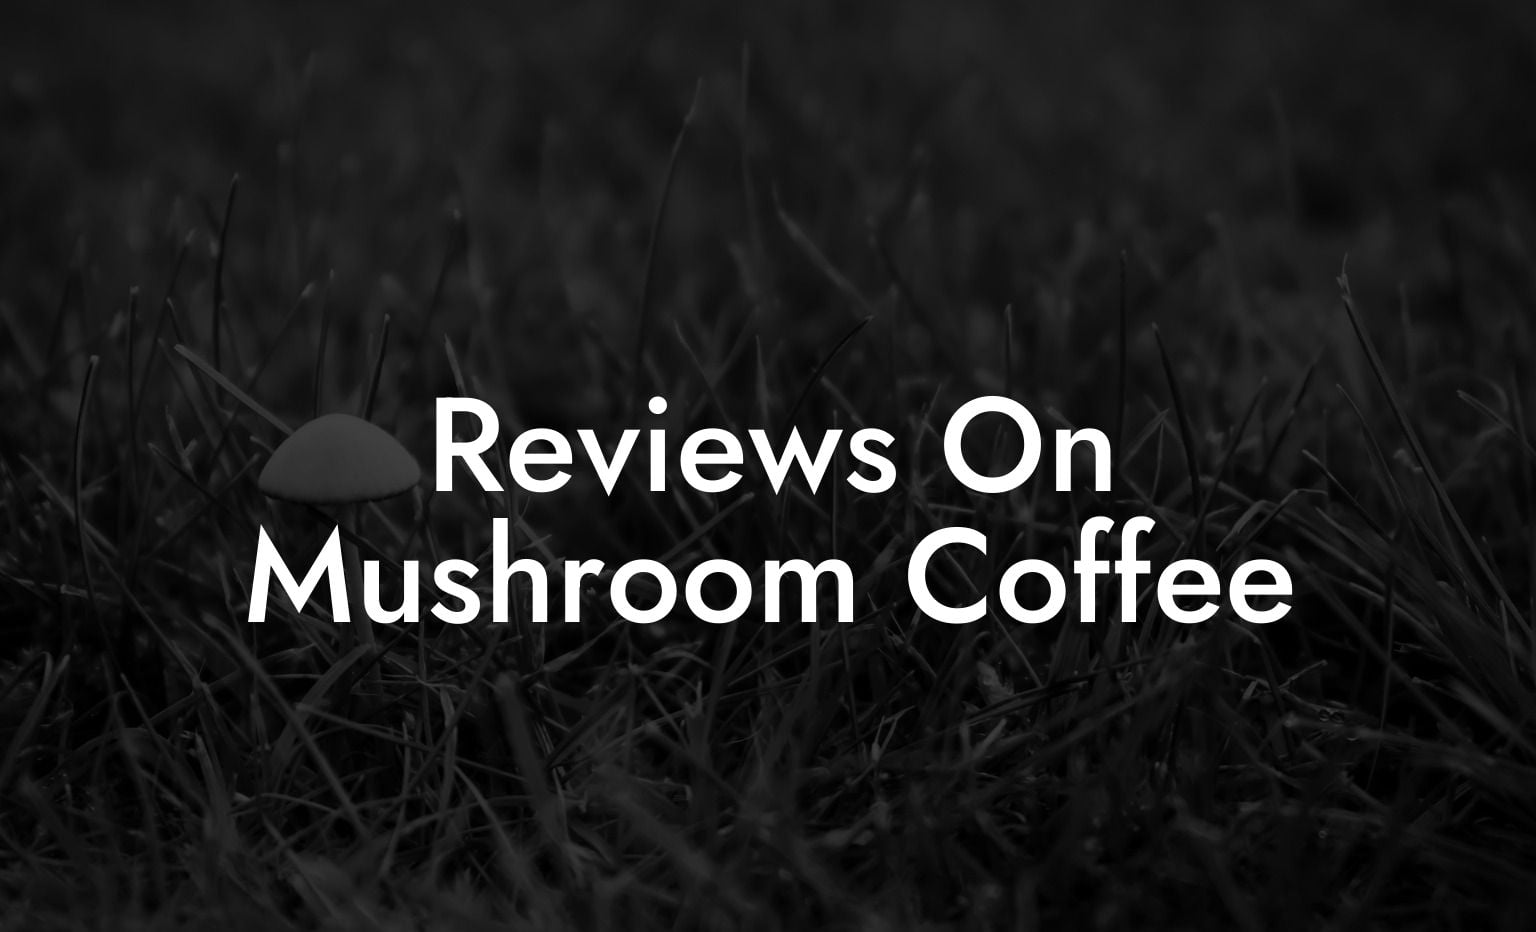 Reviews On Mushroom Coffee